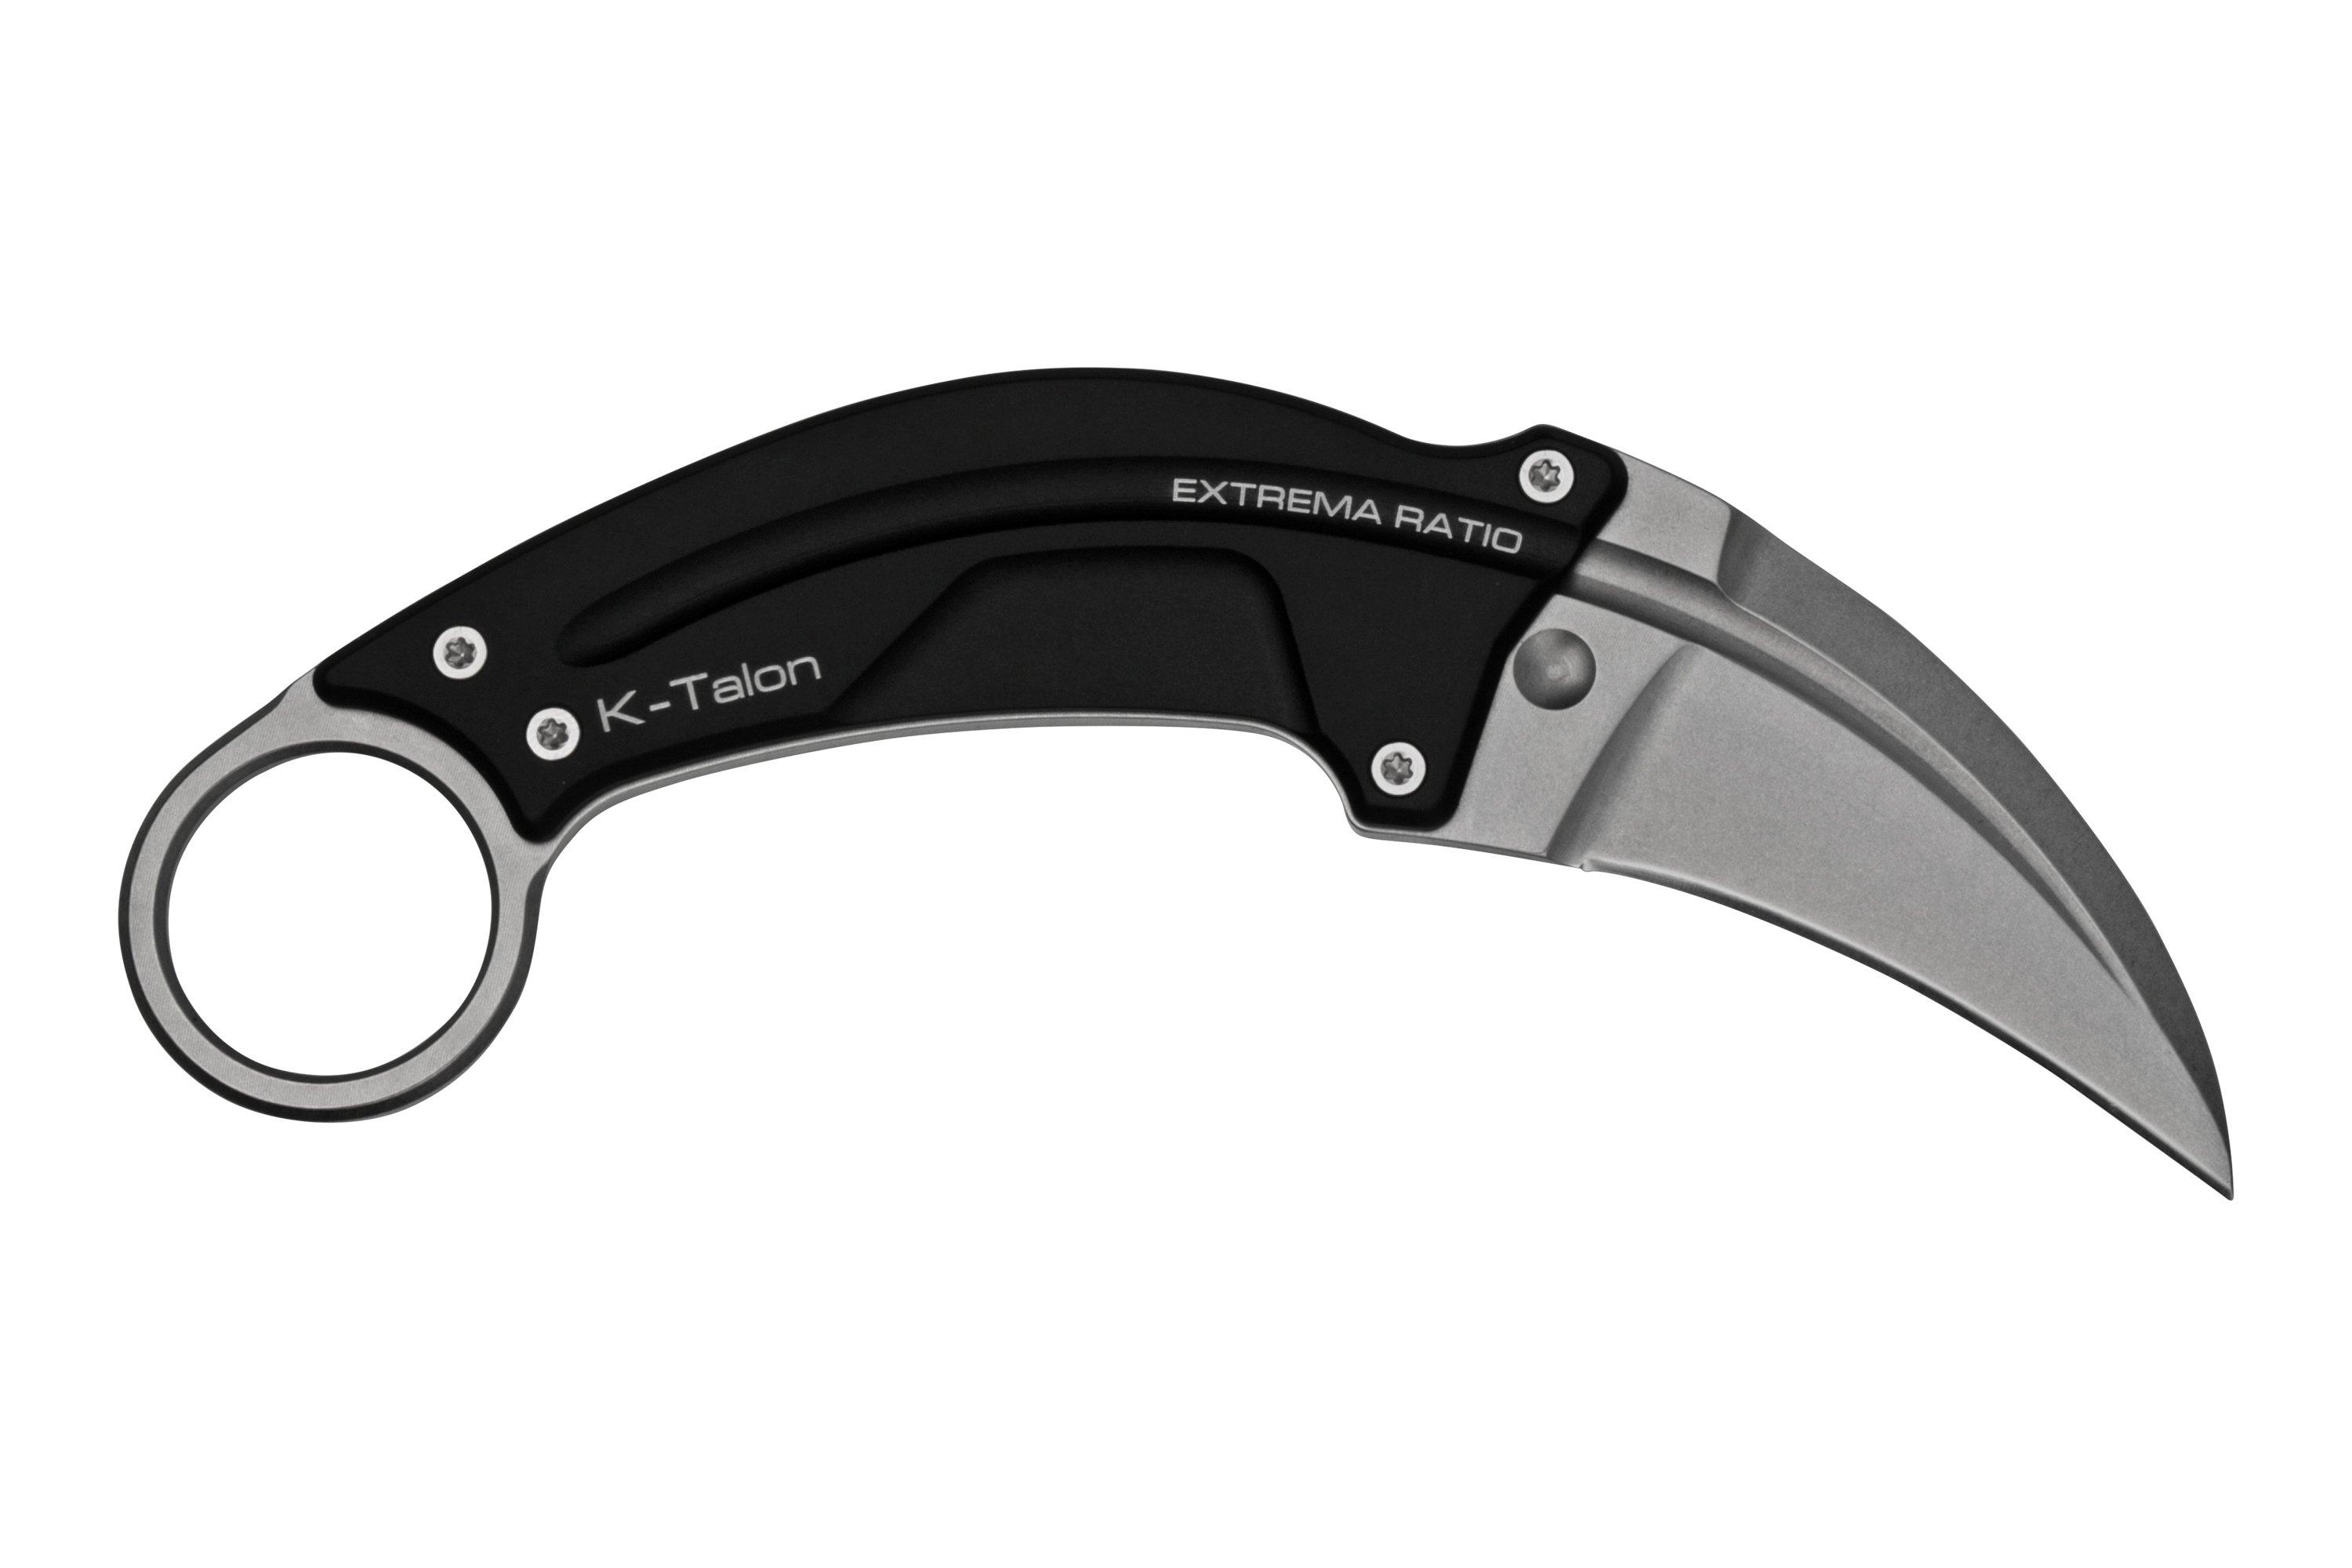 Knife Review: Extrema Ratio K-TALON